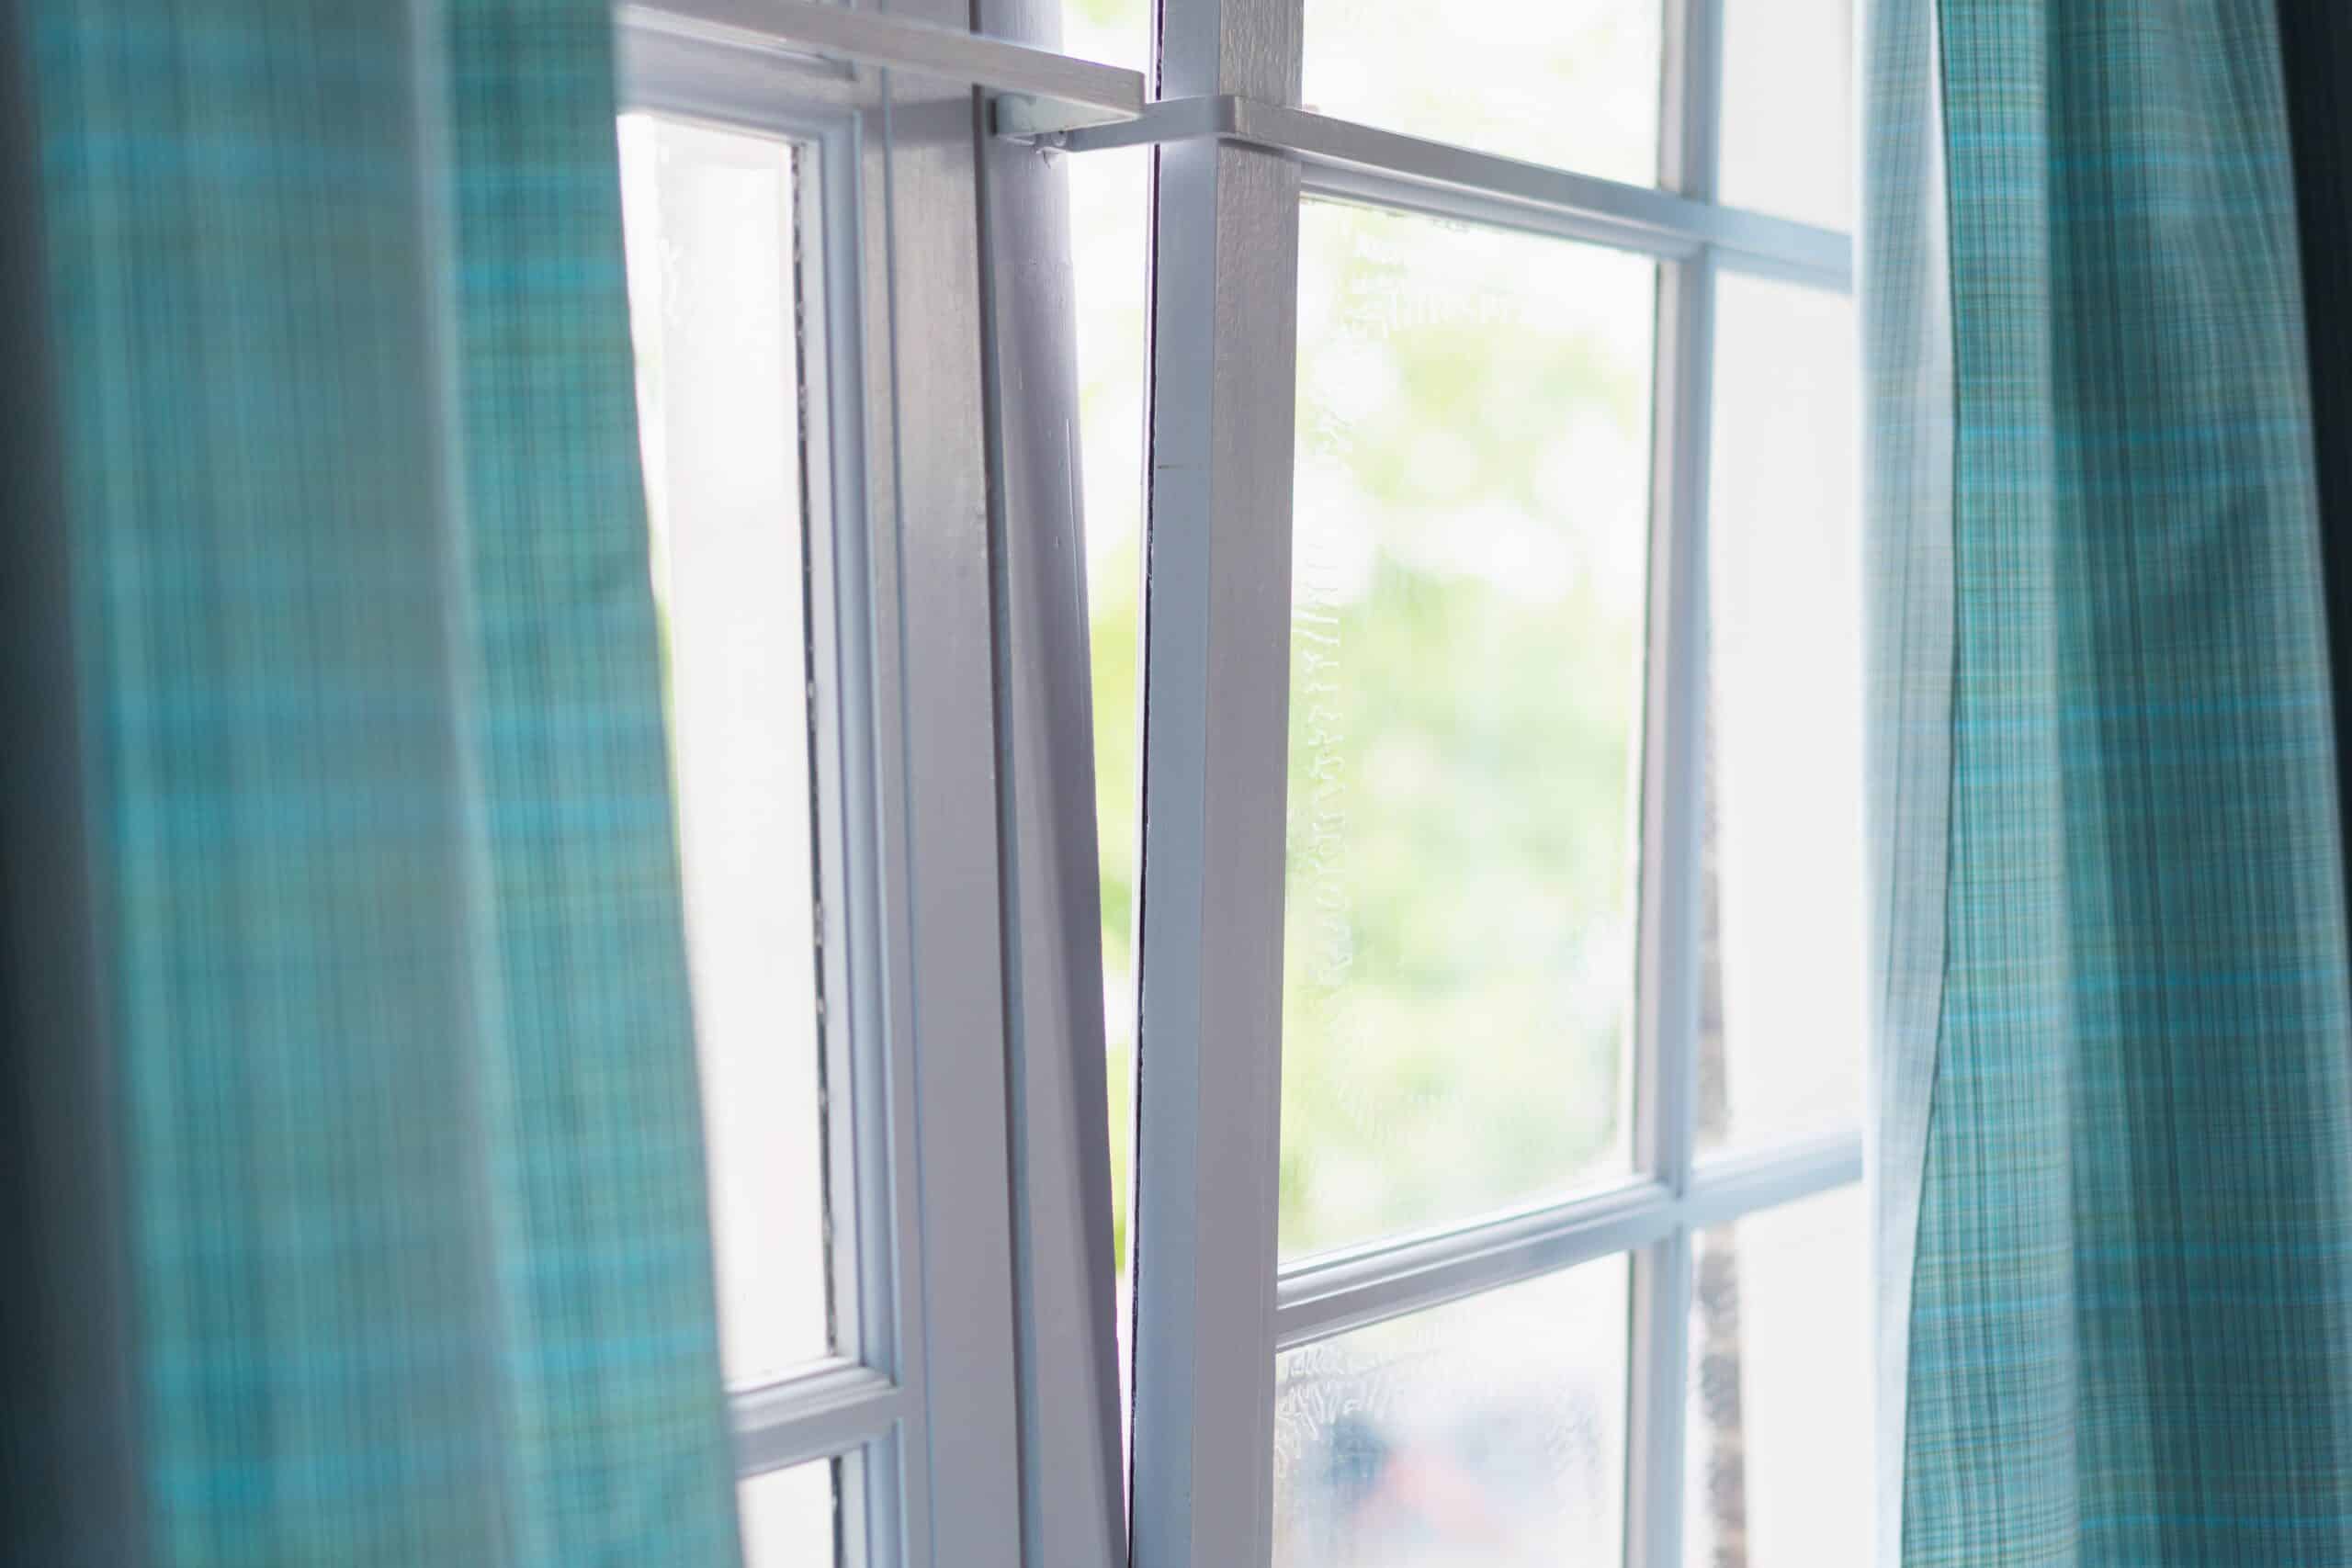 Comment bien choisir le vitrage de ses fenêtres ?